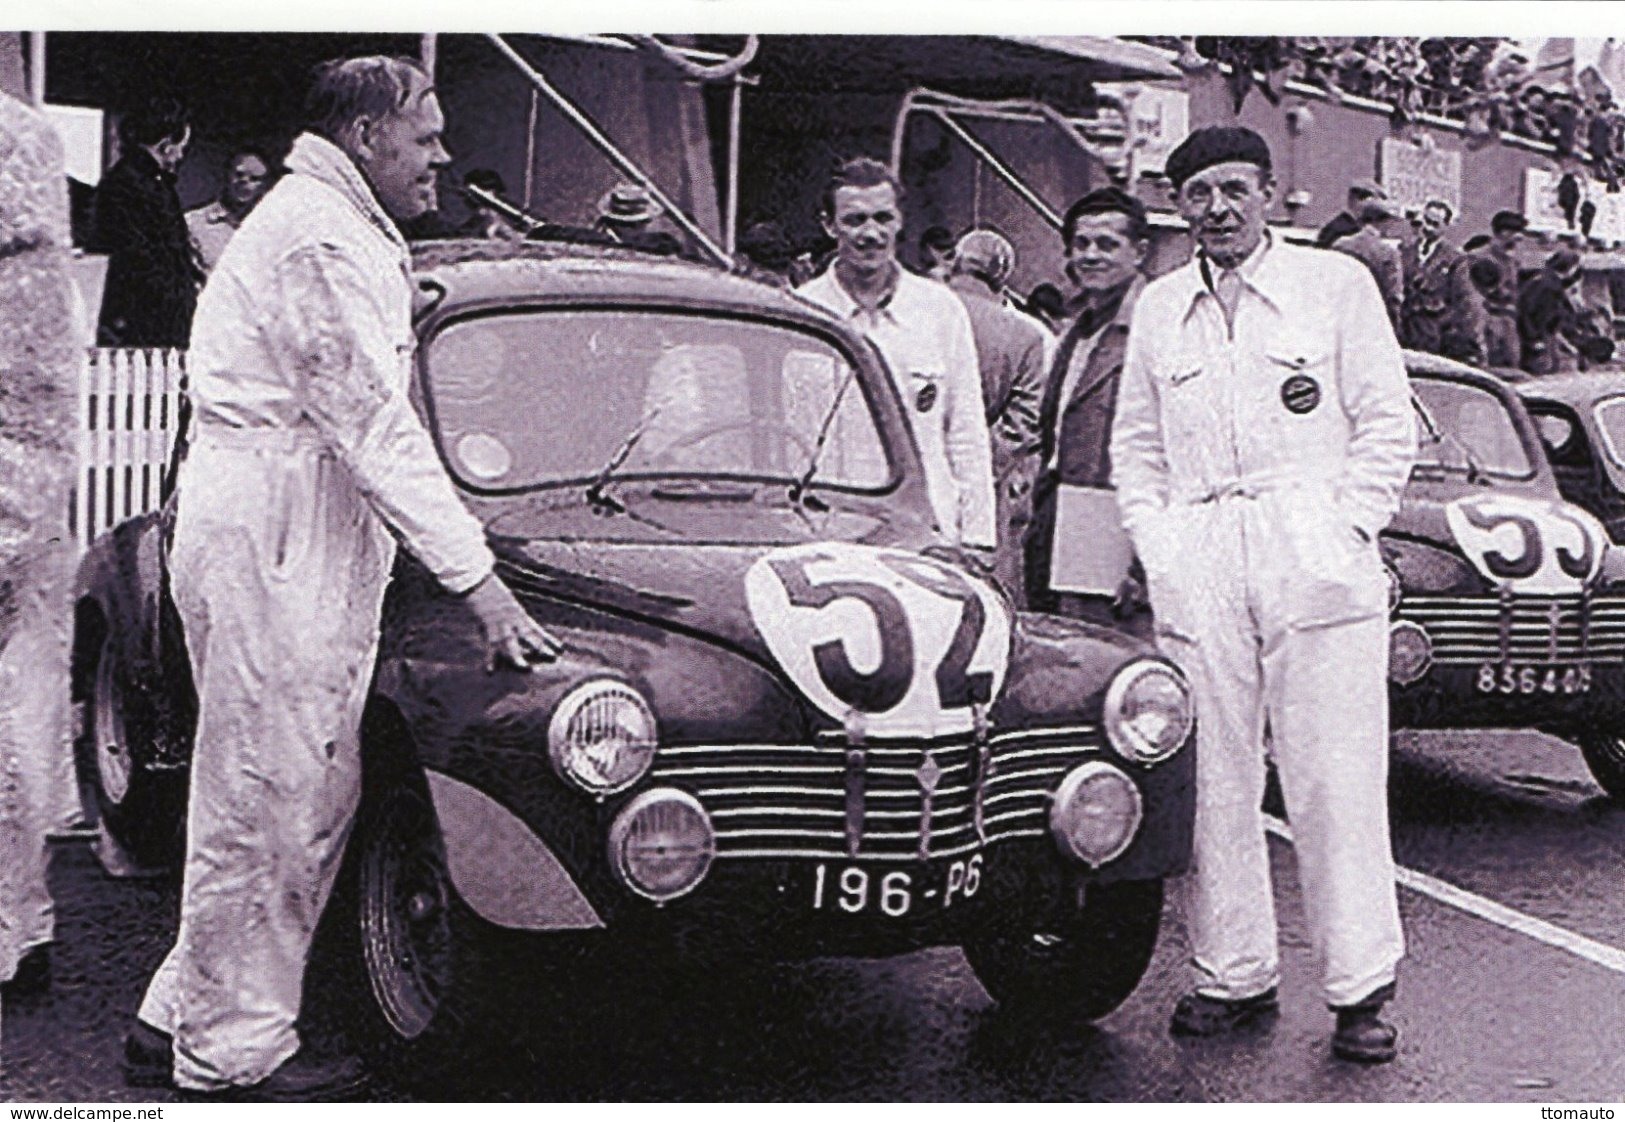 Renault 4CV 1063  - Pilotes: Jean Saint-Paul Moser (Concurrents Francaises Du Mans 1951) - PHOTO 15x10cms - Le Mans